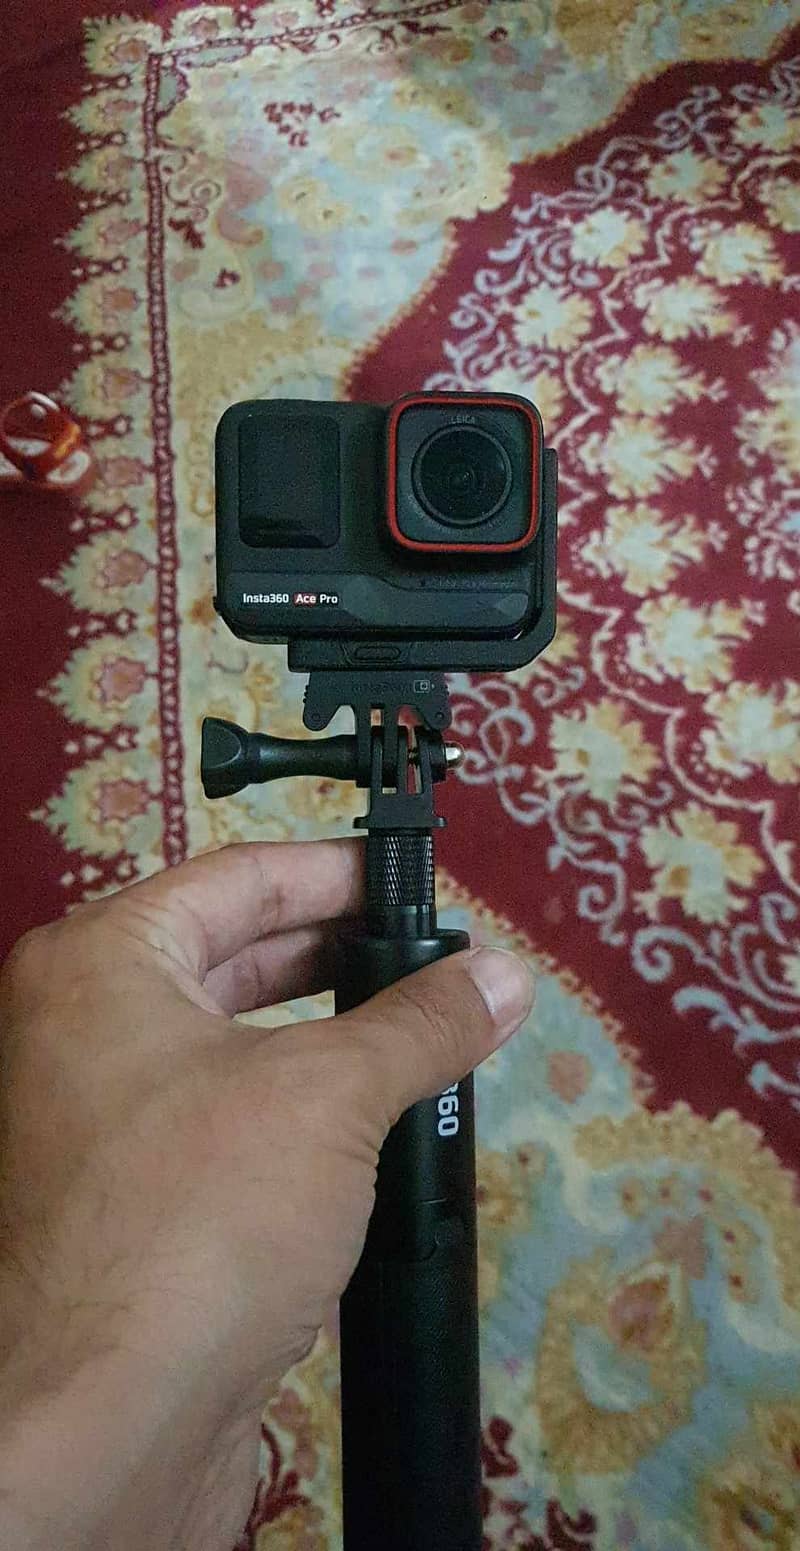 Insta 360 Ace Pro 8k video Camera 2